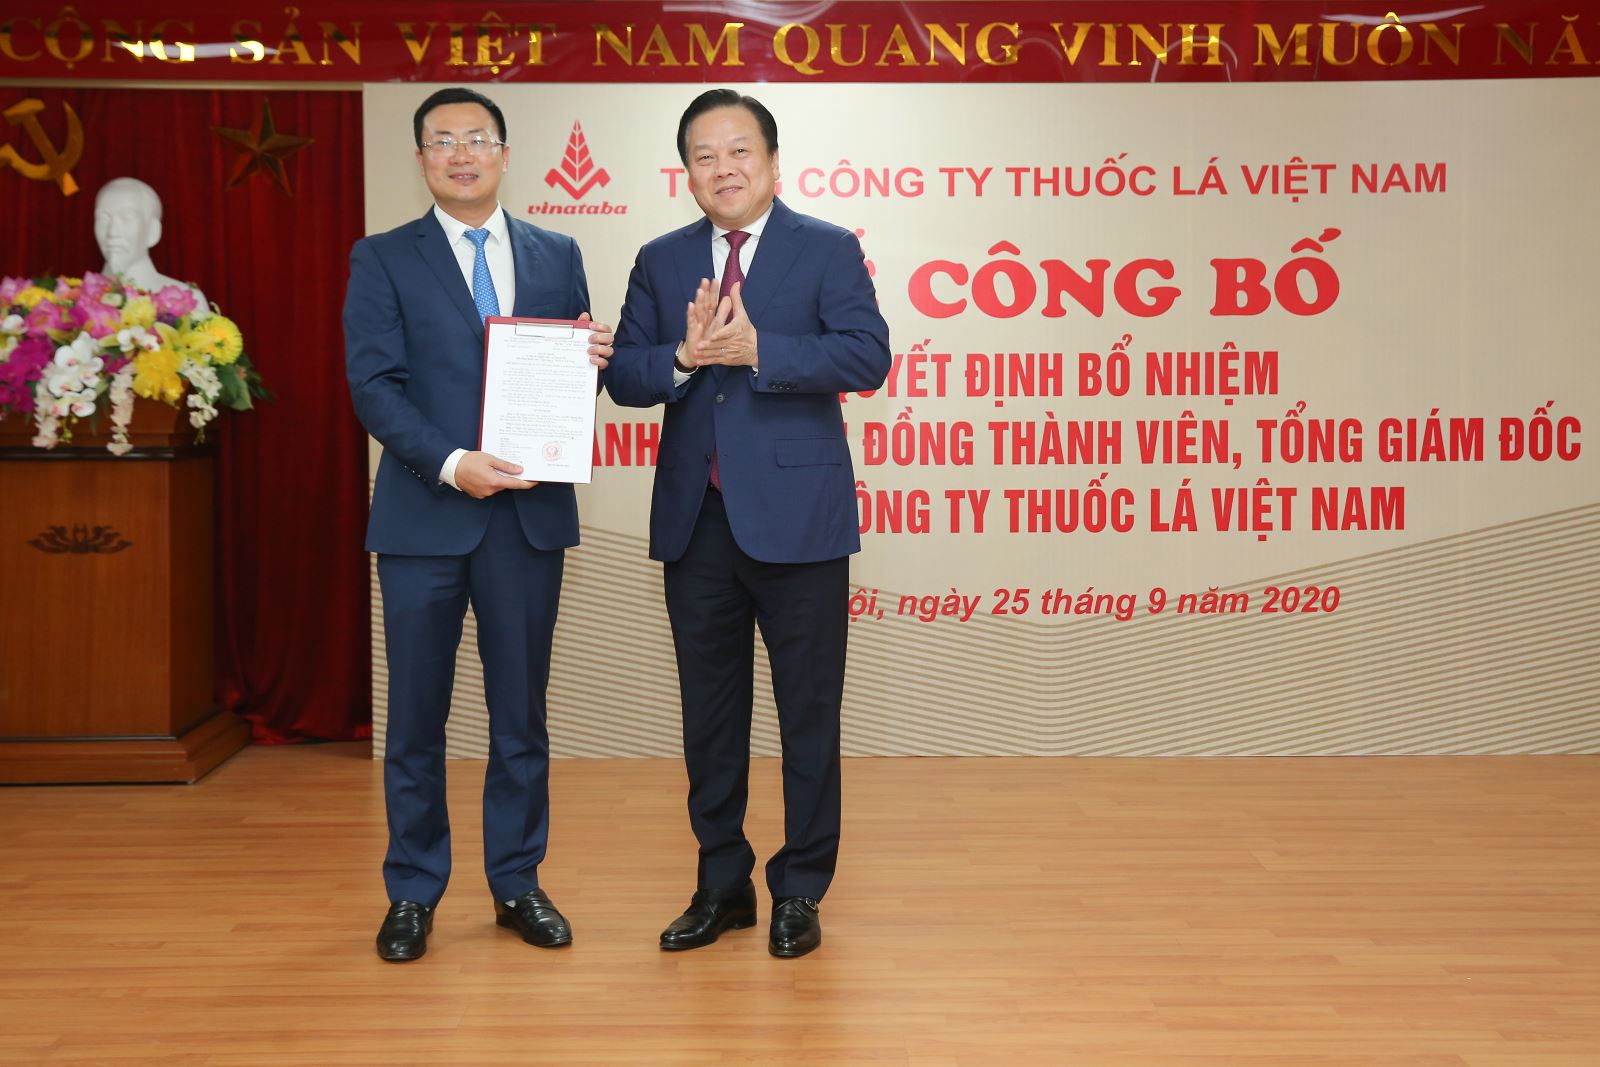 Chủ tịch Ủy ban Quản lý vốn nhà nước tại doanh nghiệp Nguyễn Hoàng Anh trao Quyết định bổ nhiệm Thành viên HĐTV, Tổng giám đốc Vinataba cho đồng chí Hà Quang Hòa.